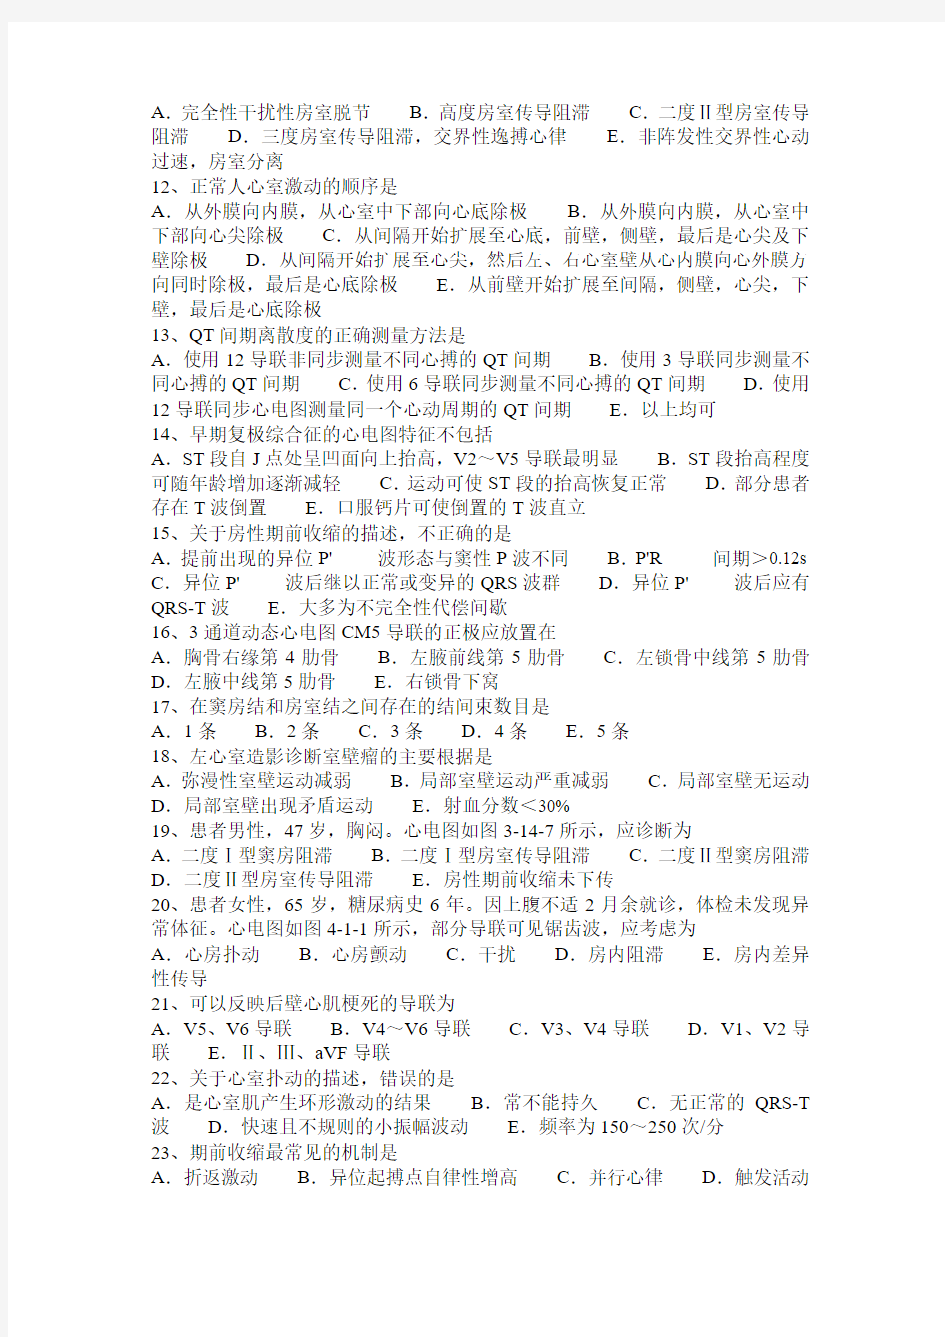 西藏2015年上半年心电图技术主任技师(副主任技术)考试题